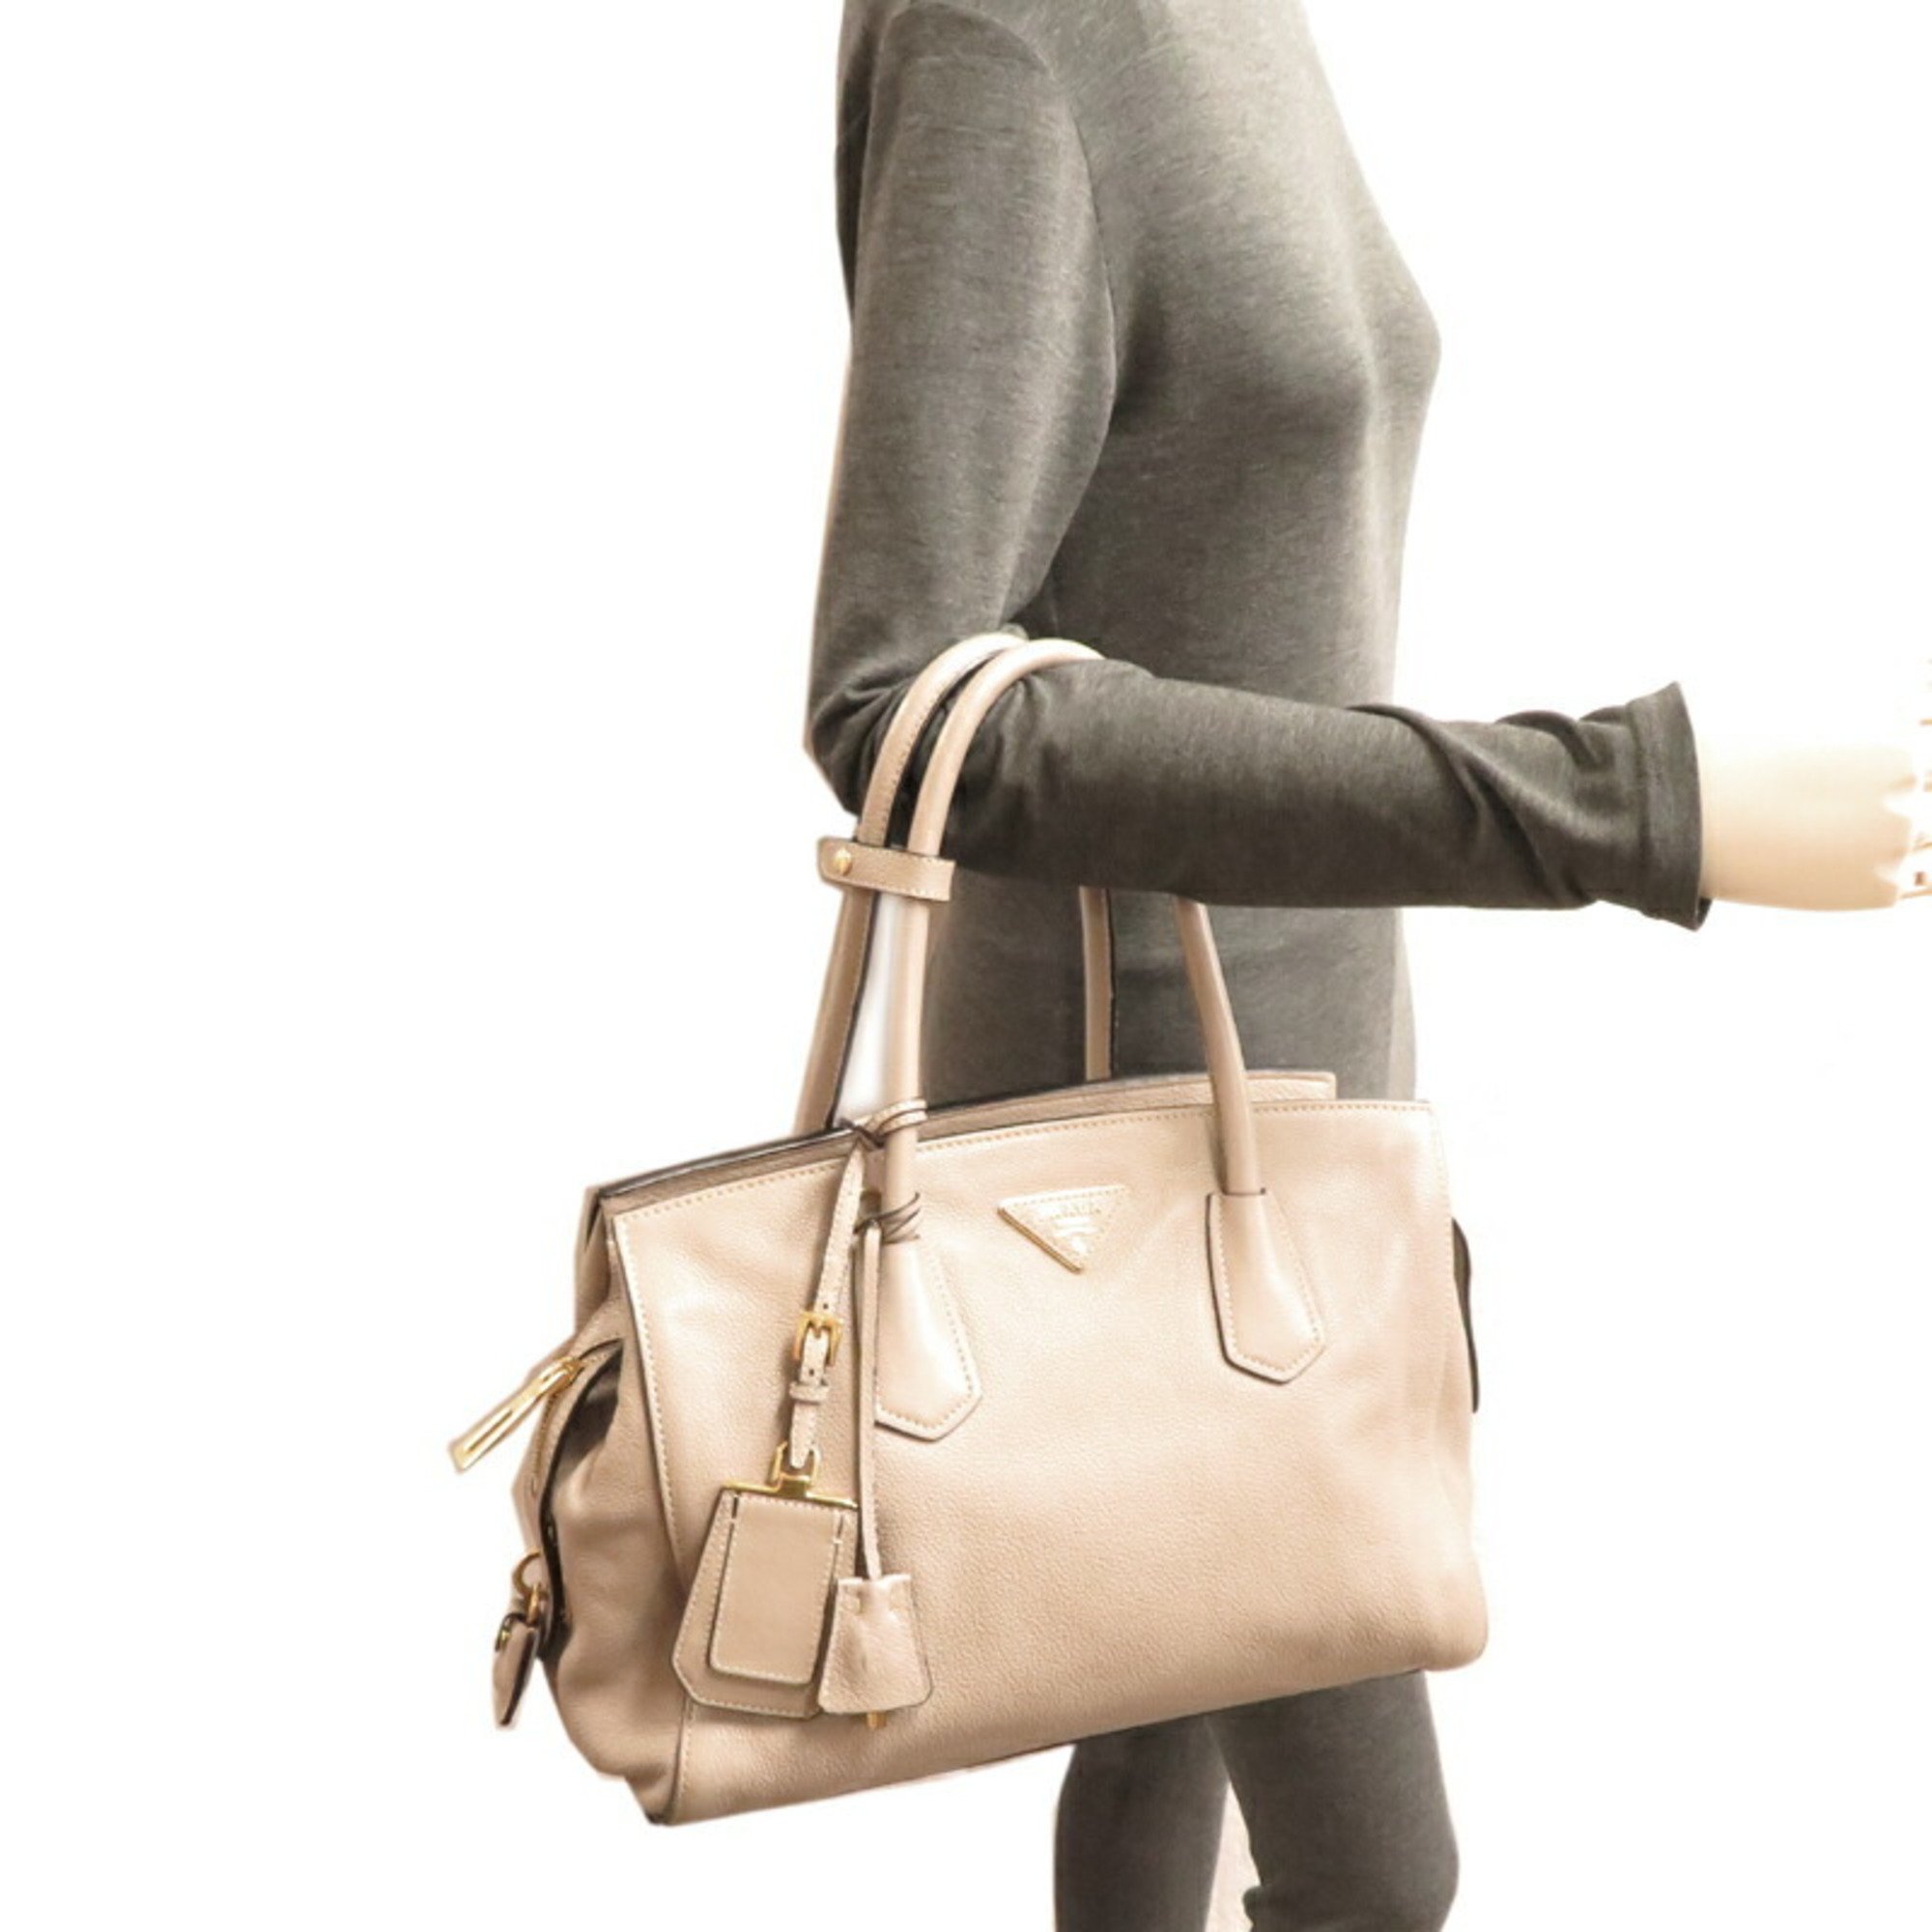 Prada 2way shoulder bag, women's handbag, BN2769, leather, beige